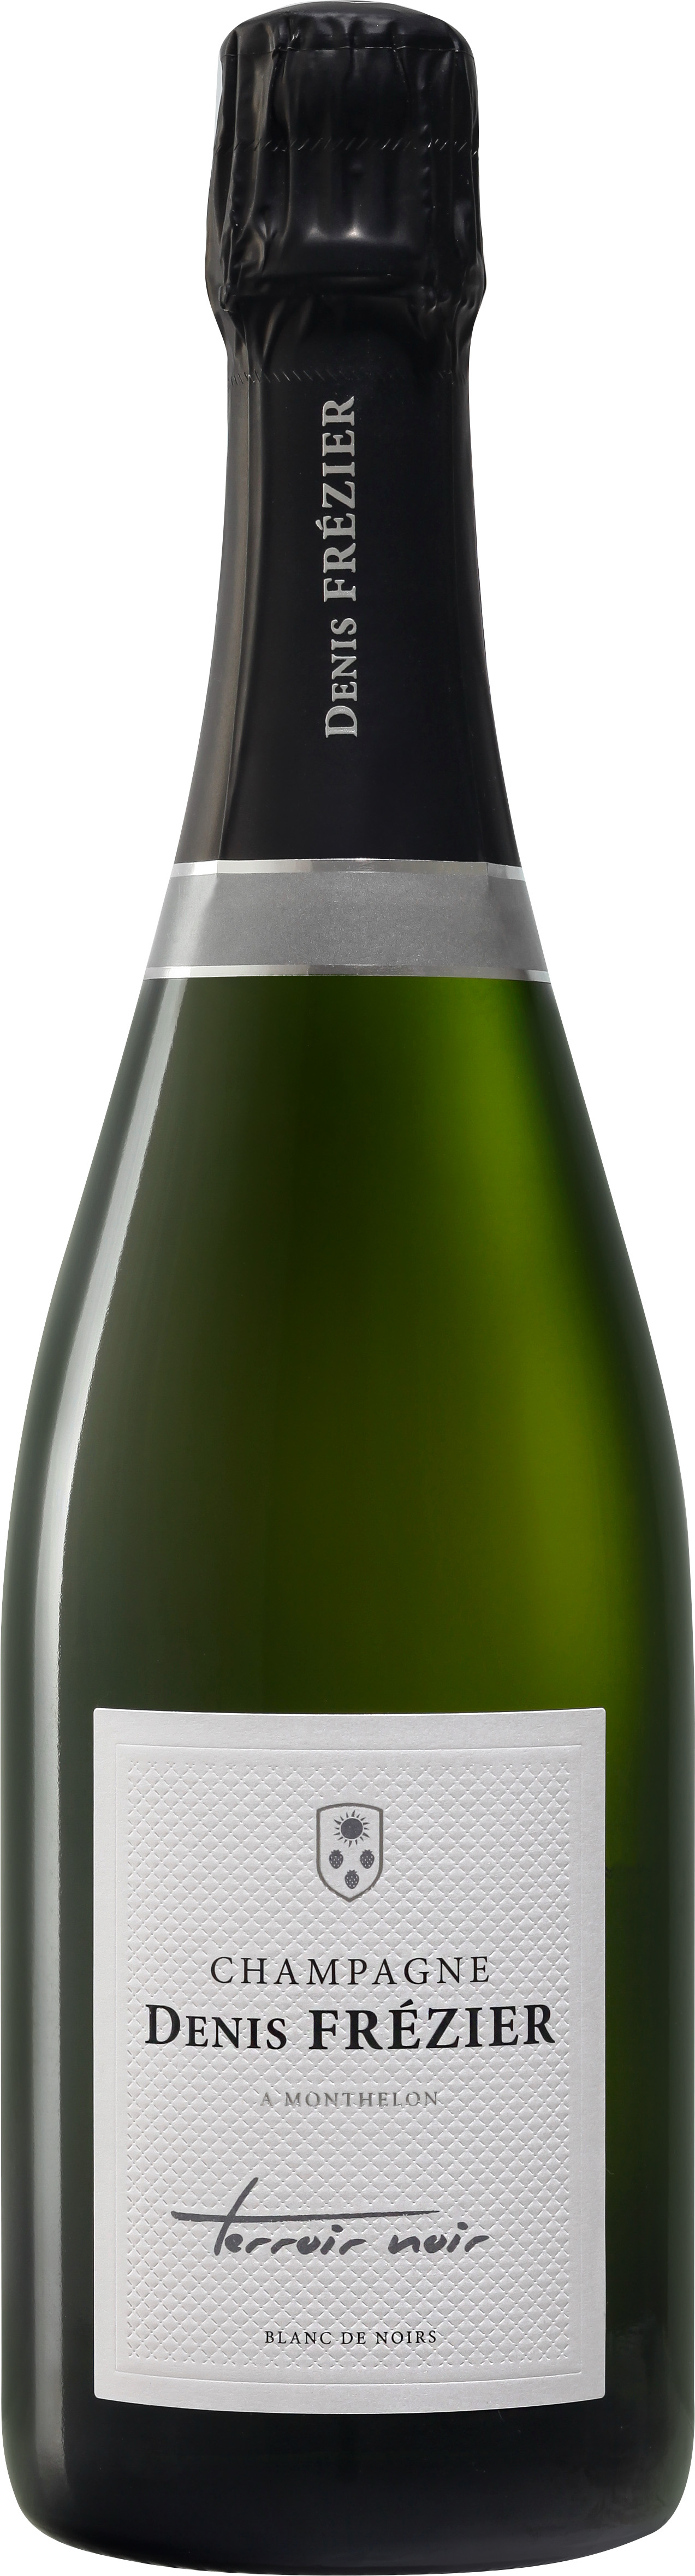 Terroir Noir Brut - Champagne Denis Frézier